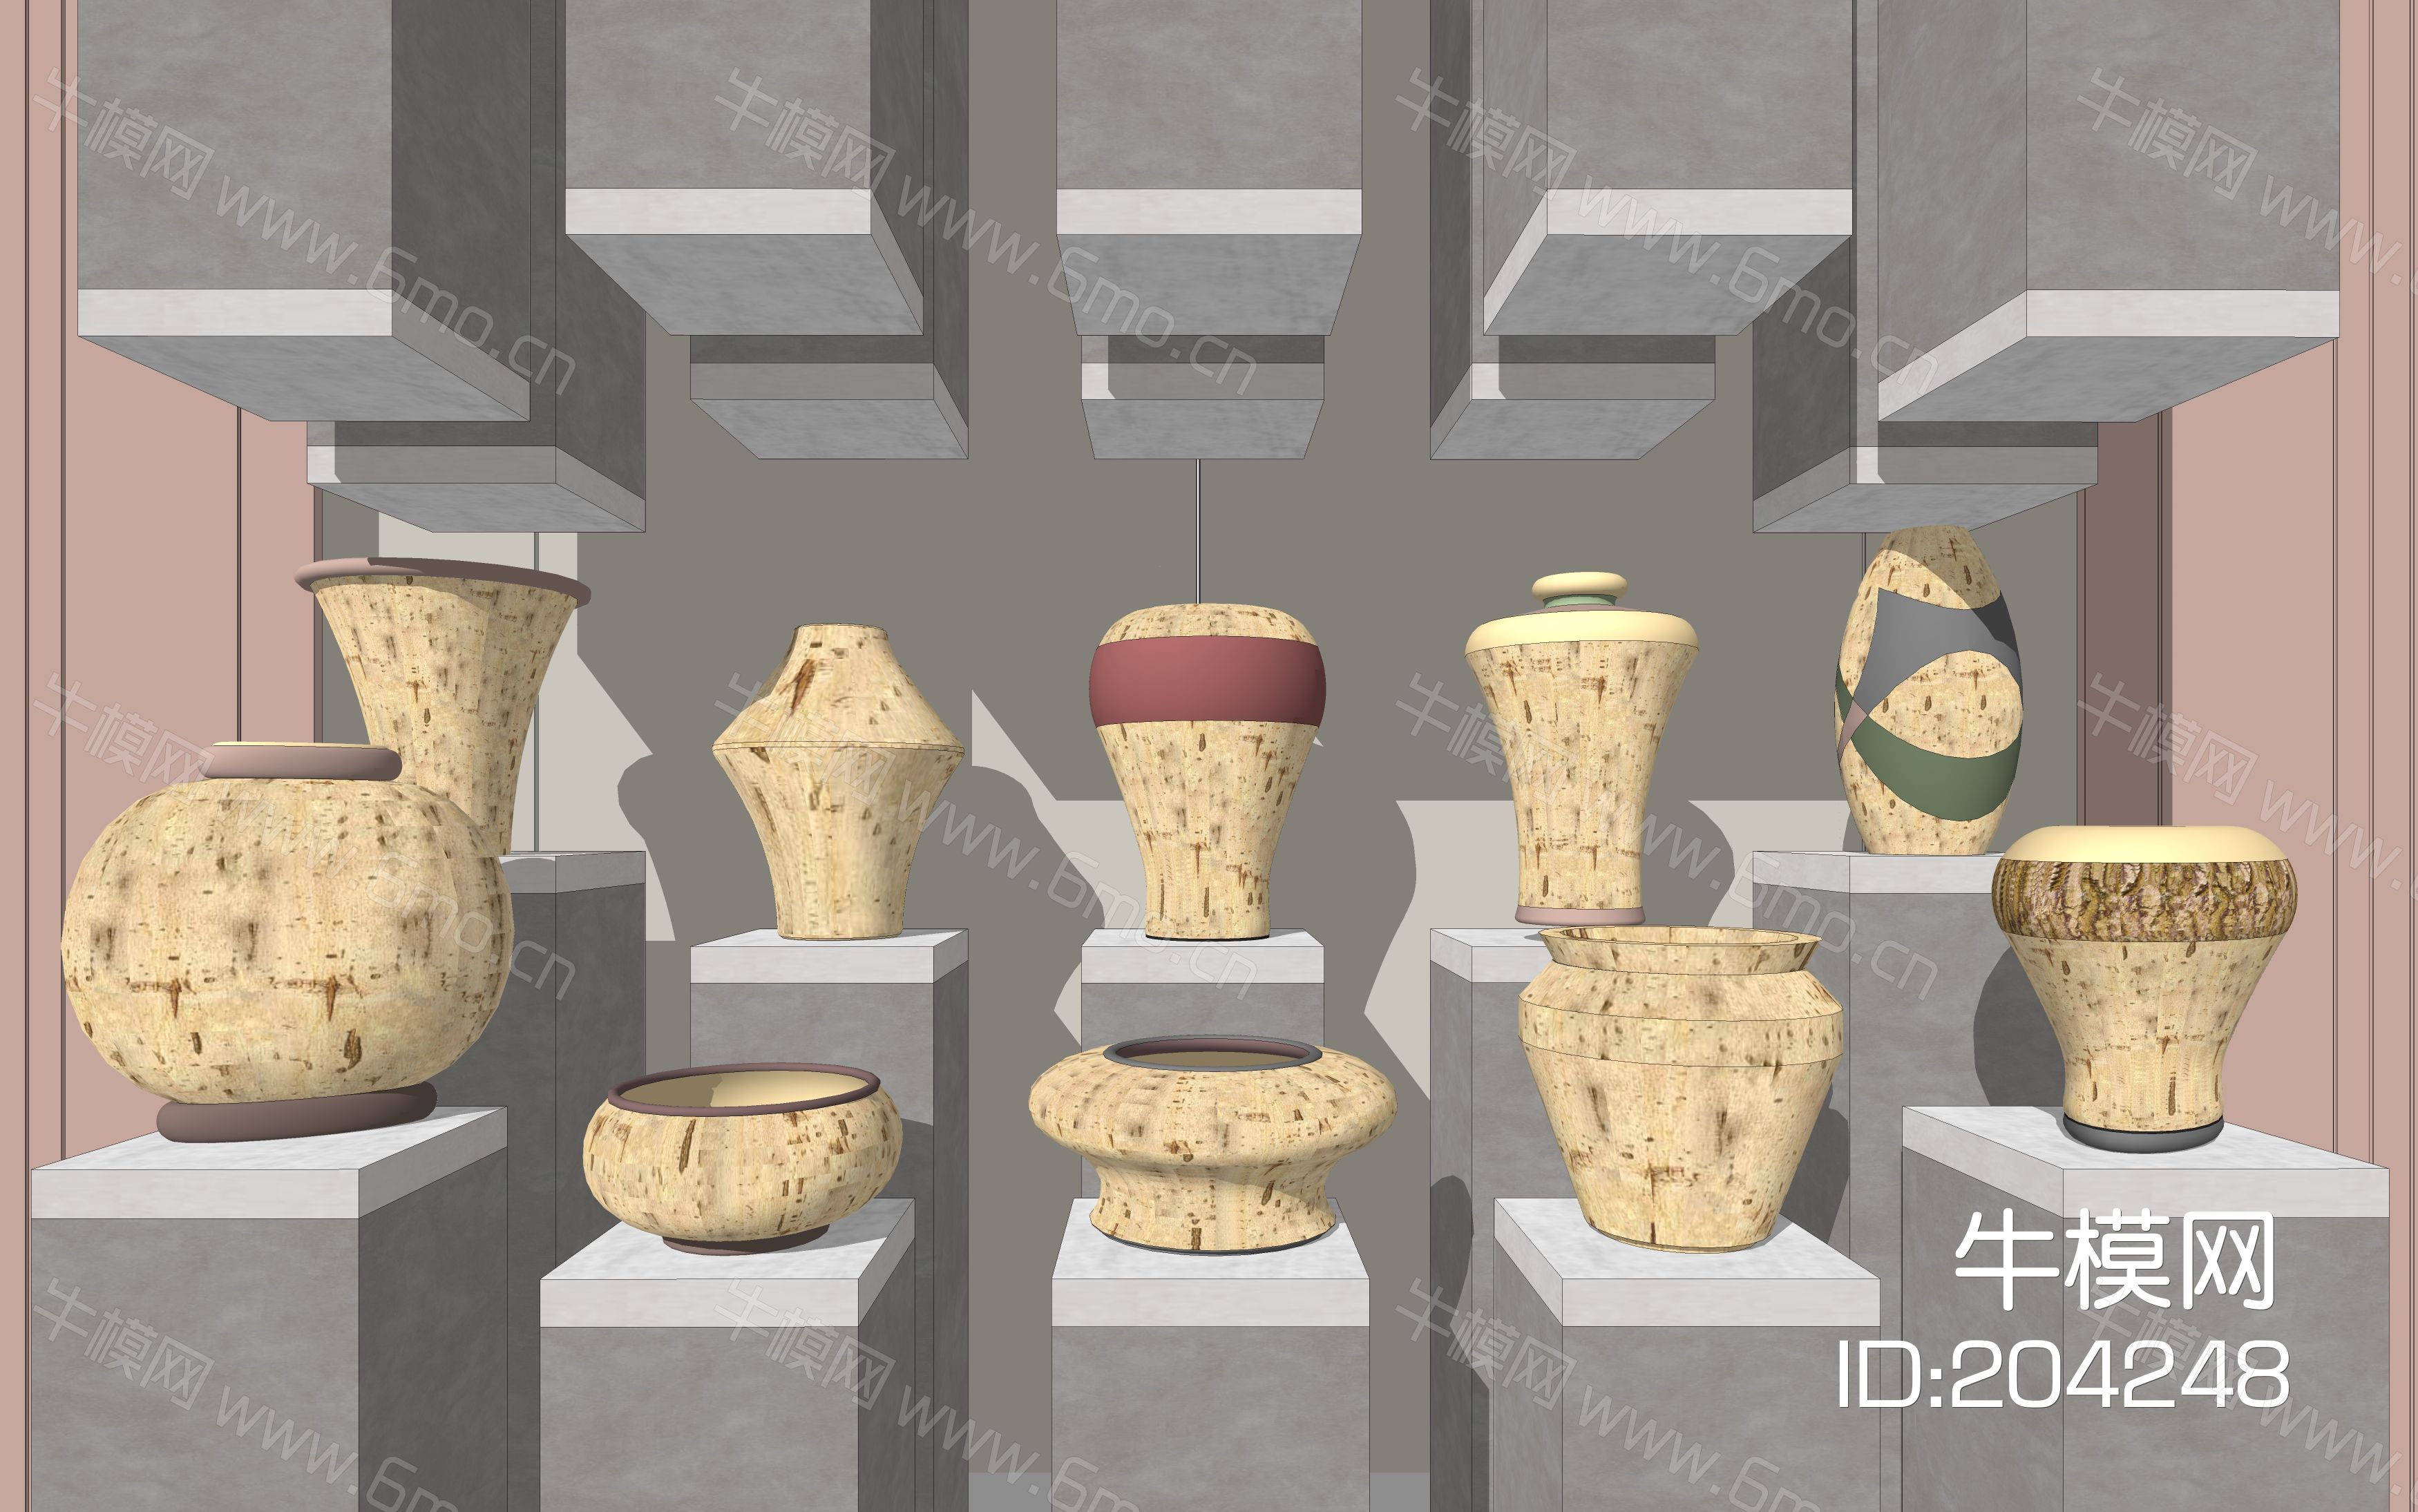 中式陶器 瓷器摆件 陶器摆件 古朴 素色陶器